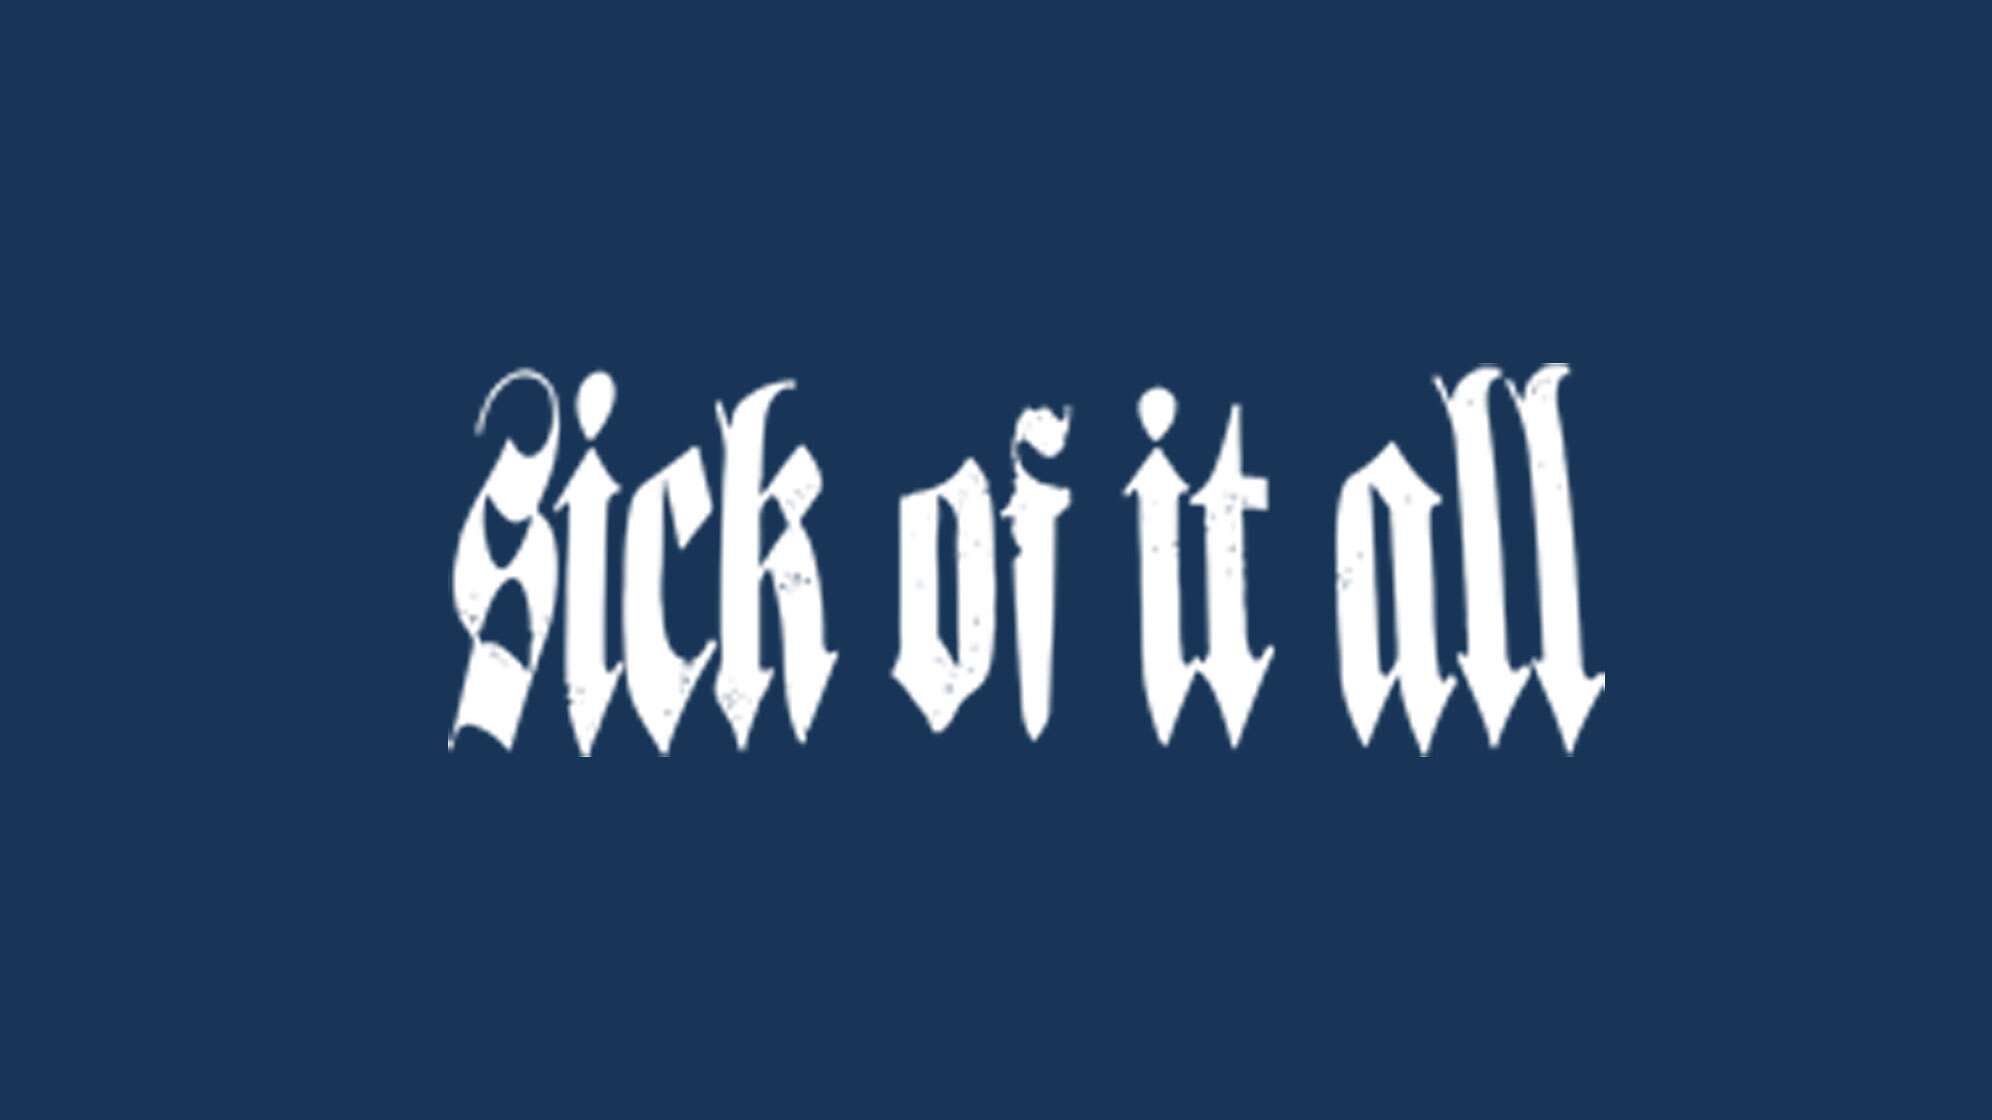 Logo der Band Sick of It all in weiß auf dunkelblauem Grund